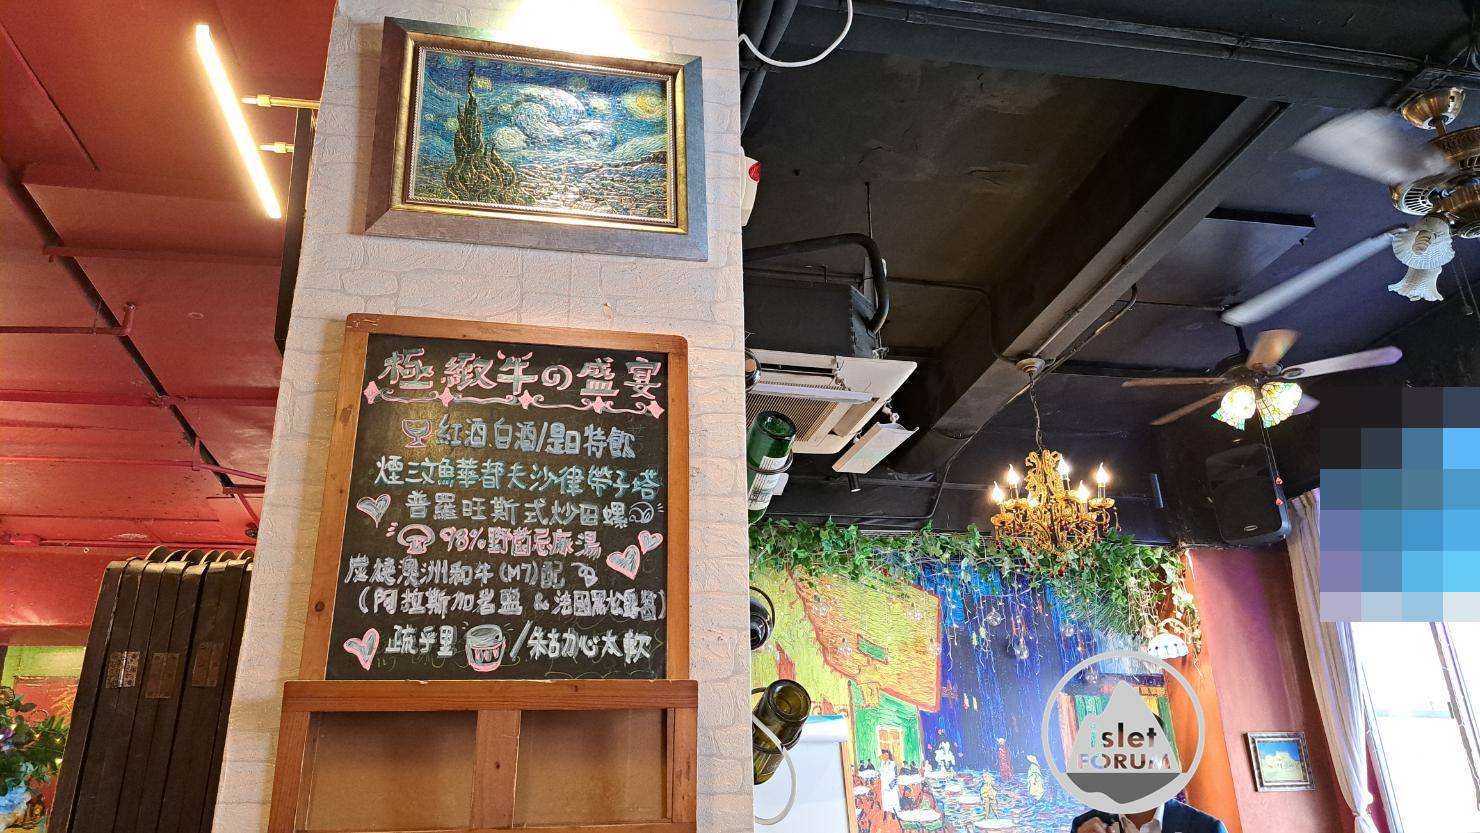 Van Gogh Kitchen凡高廚房 (3).jpg